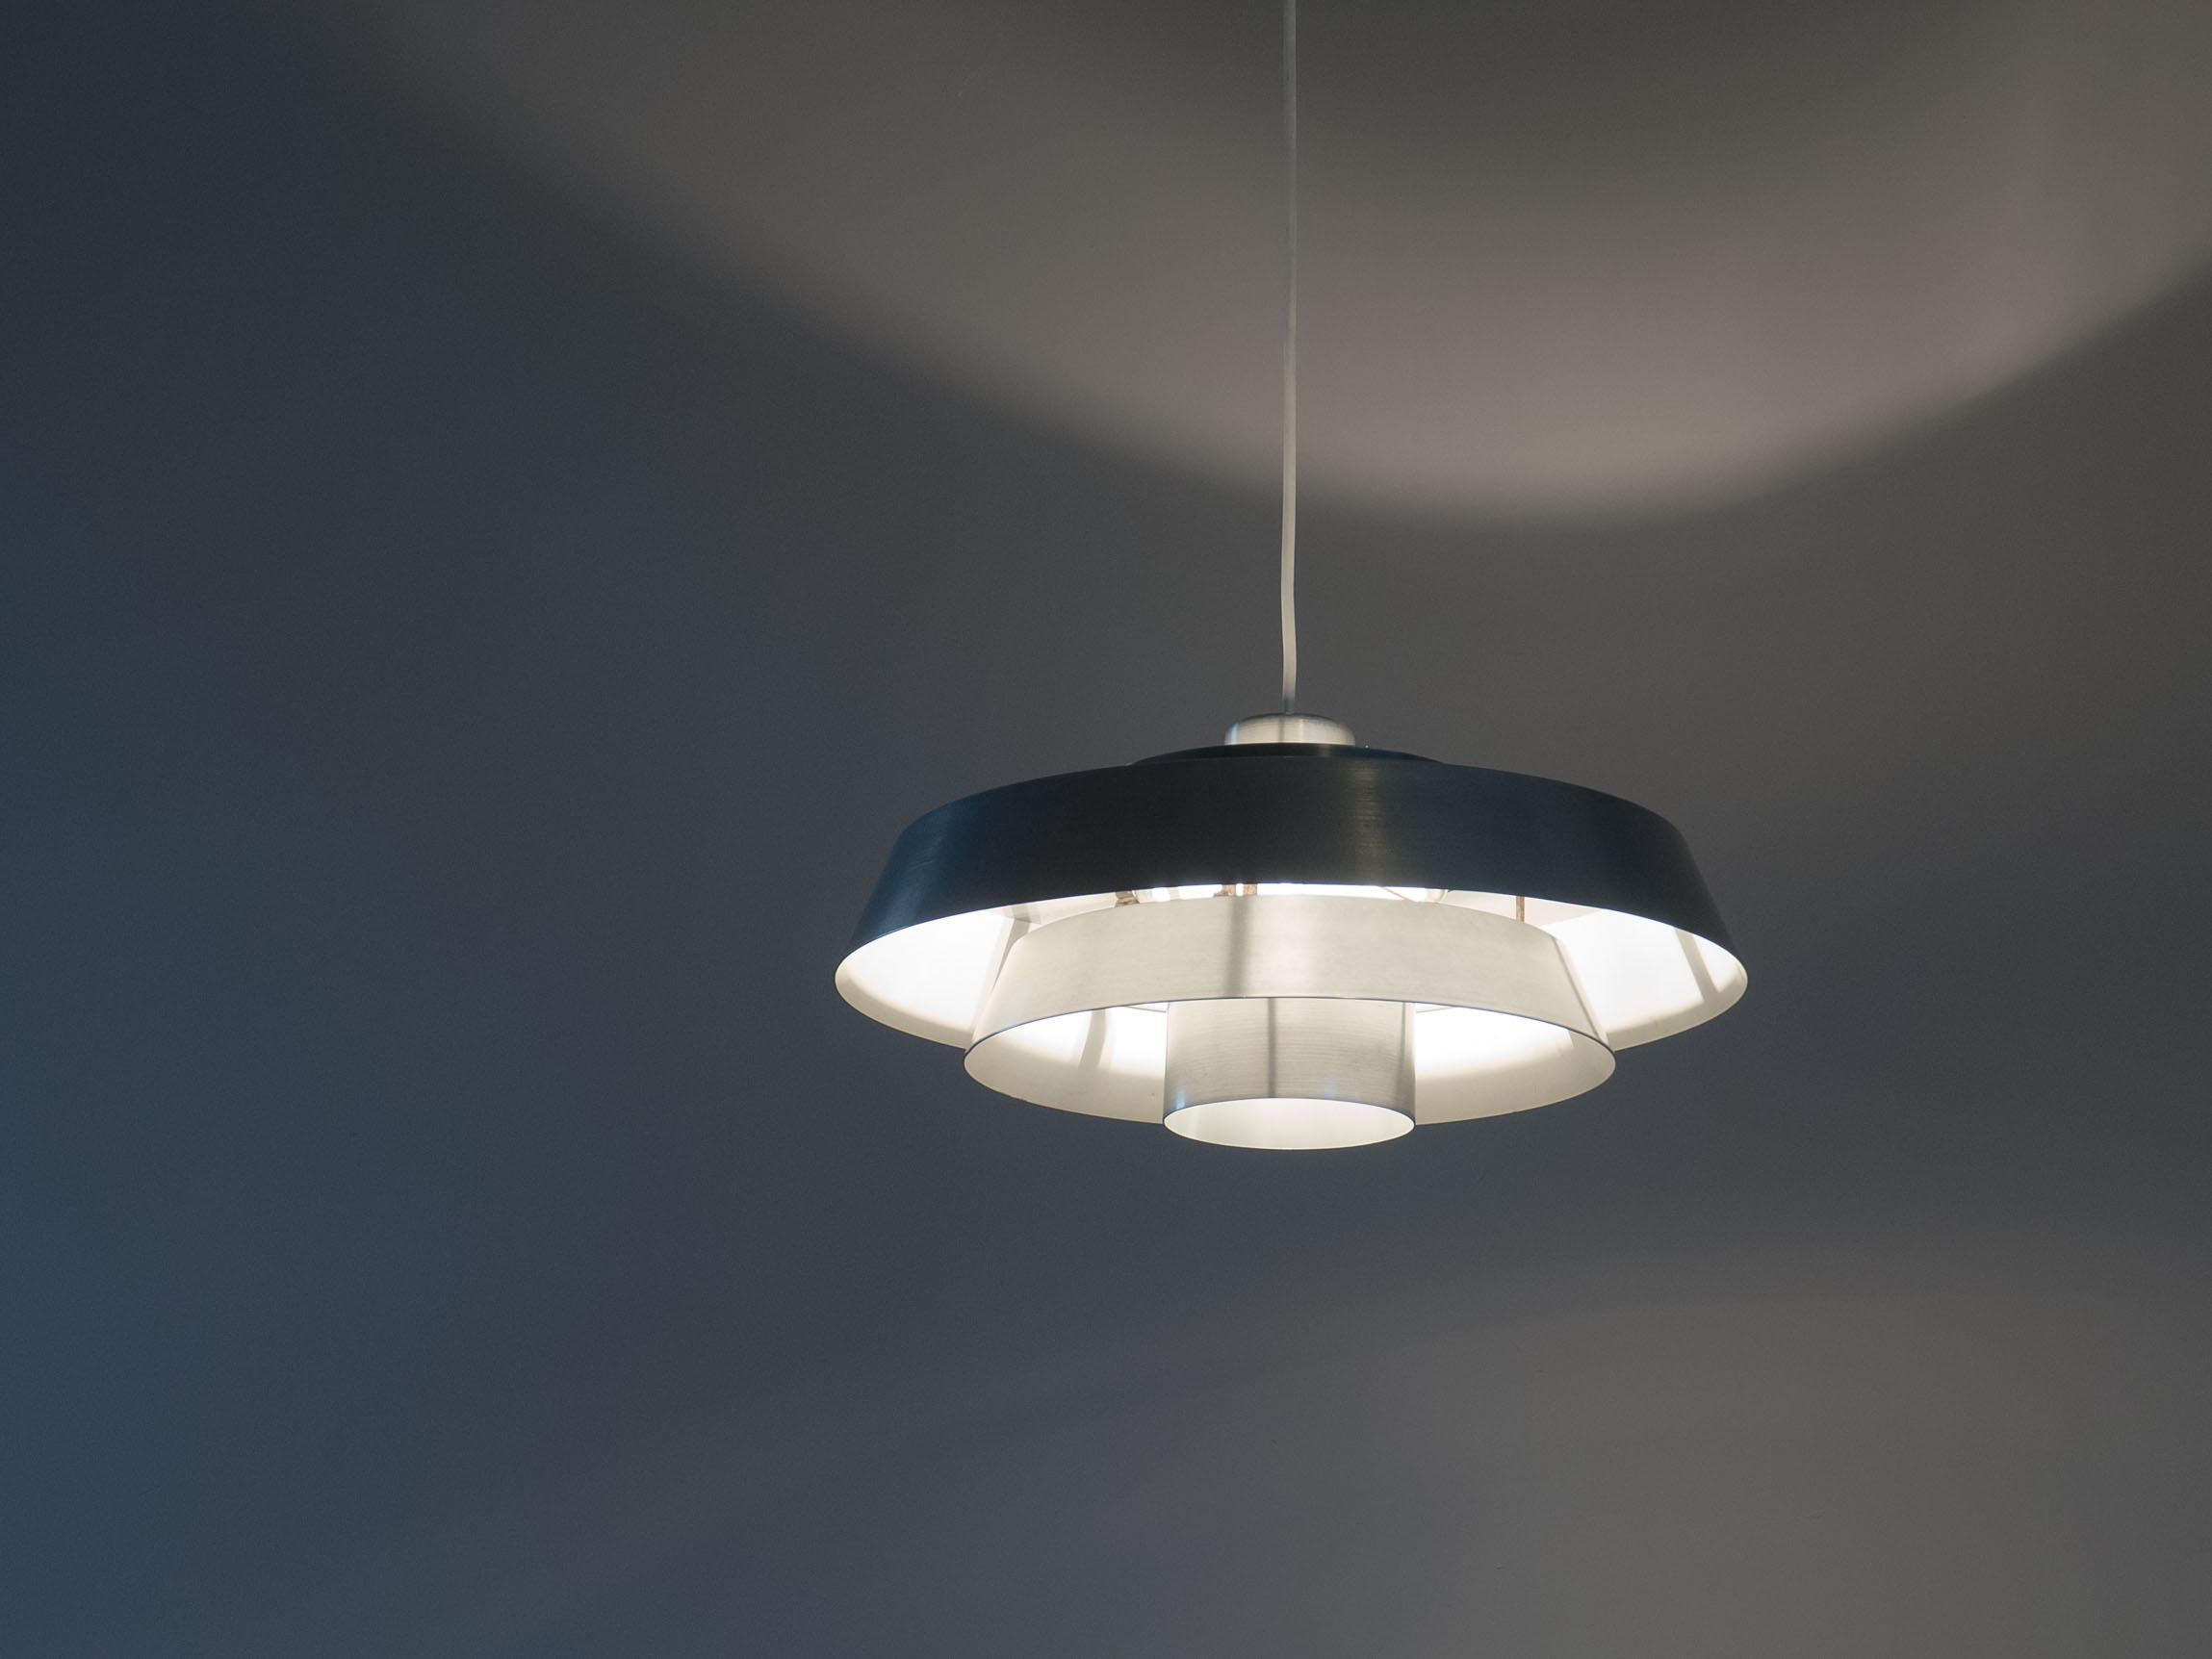 Lampe suspendue vintage appelée 'Nova'. Conçu par Jo Hammerborg pour Fog & Mørup, Danemark.

Cette suspension vintage est un excellent exemple de luminaires au design danois. Les anneaux en aluminium sont façonnés et dimensionnés de manière à ce que